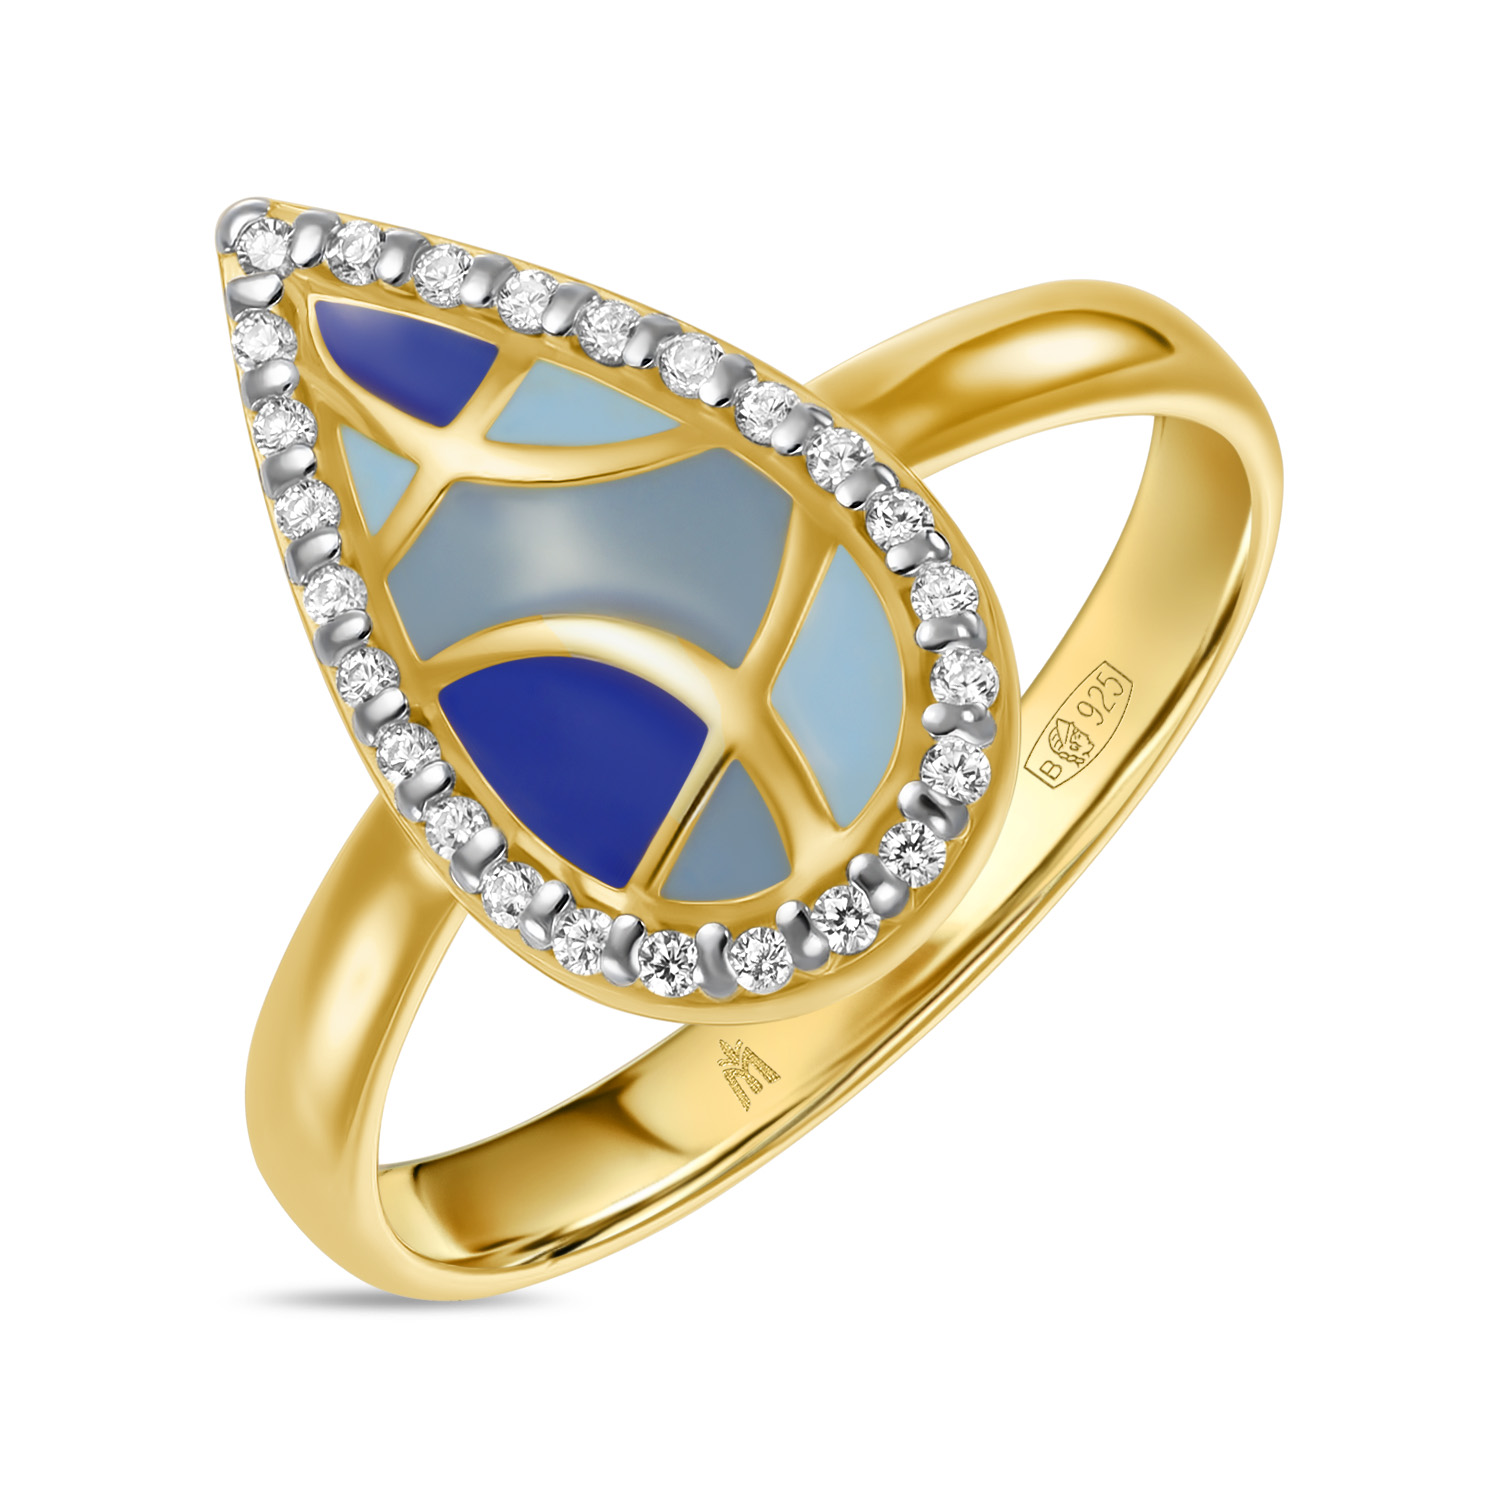 Кольца МЮЗ Кольцо с эмалью и фианитами кольца мюз серебряное кольцо с эмалью имитацией бирюзы и фианитами